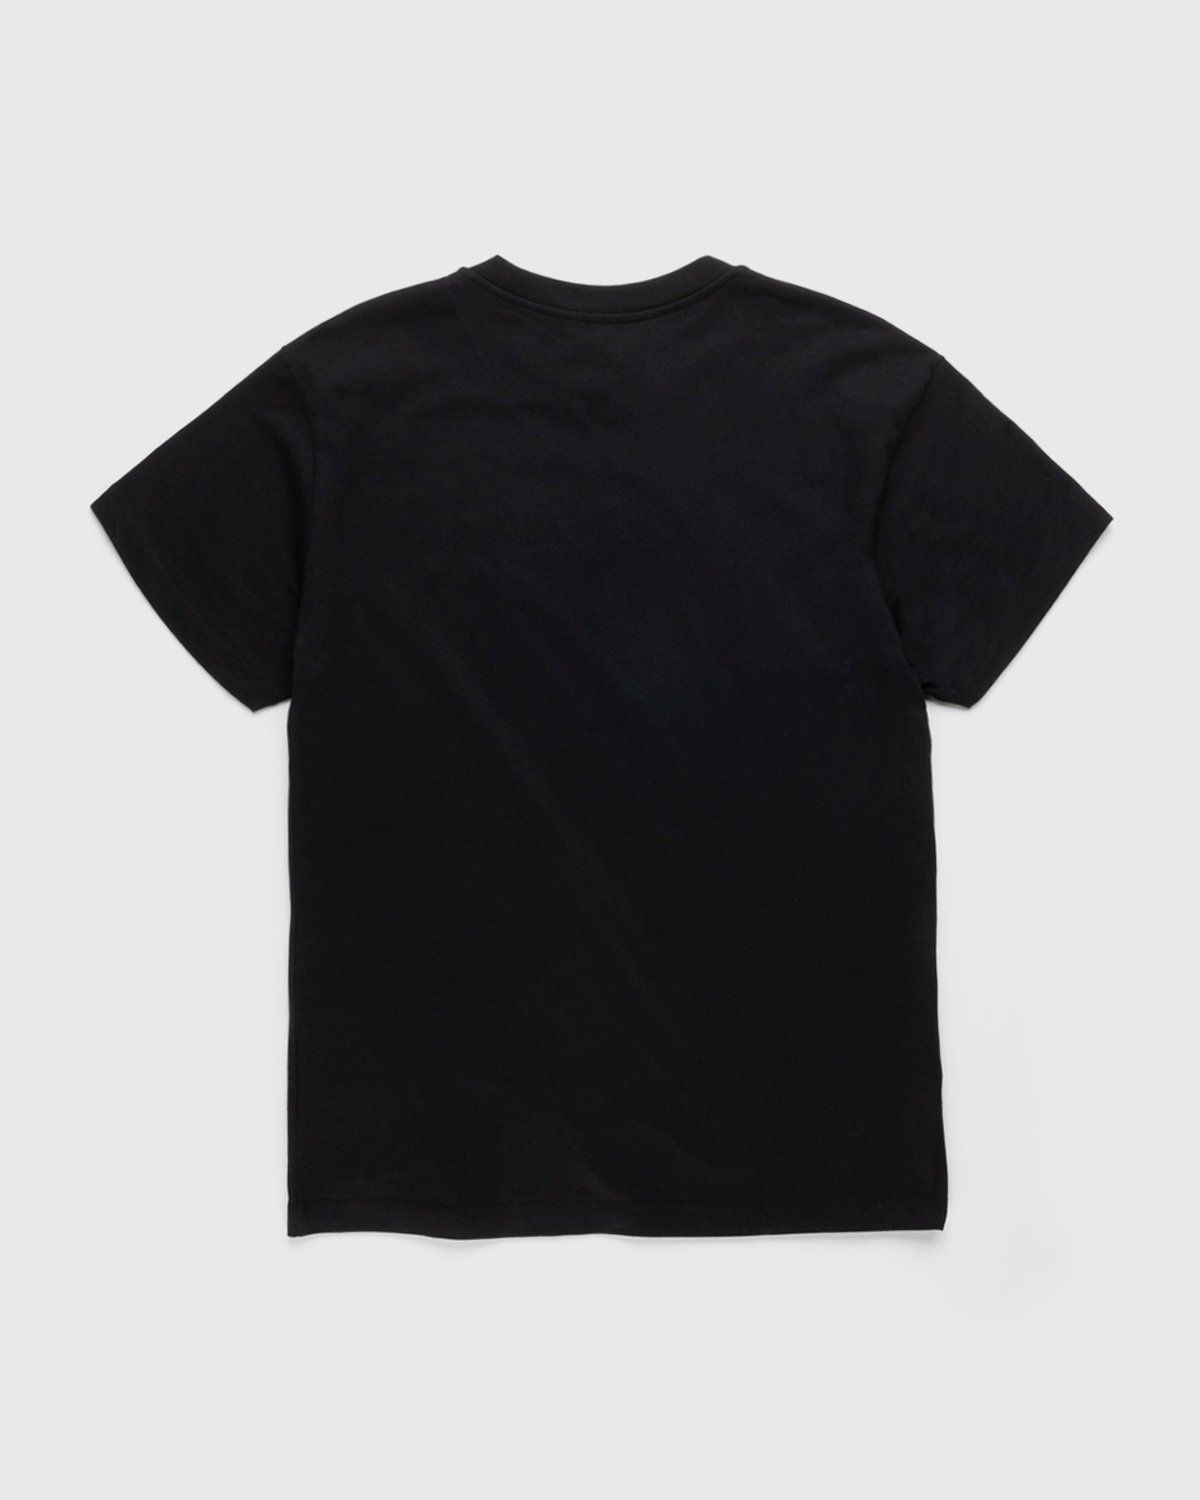 Jil Sander – T-Shirt 3-Pack Black - Tops - Black - Image 3